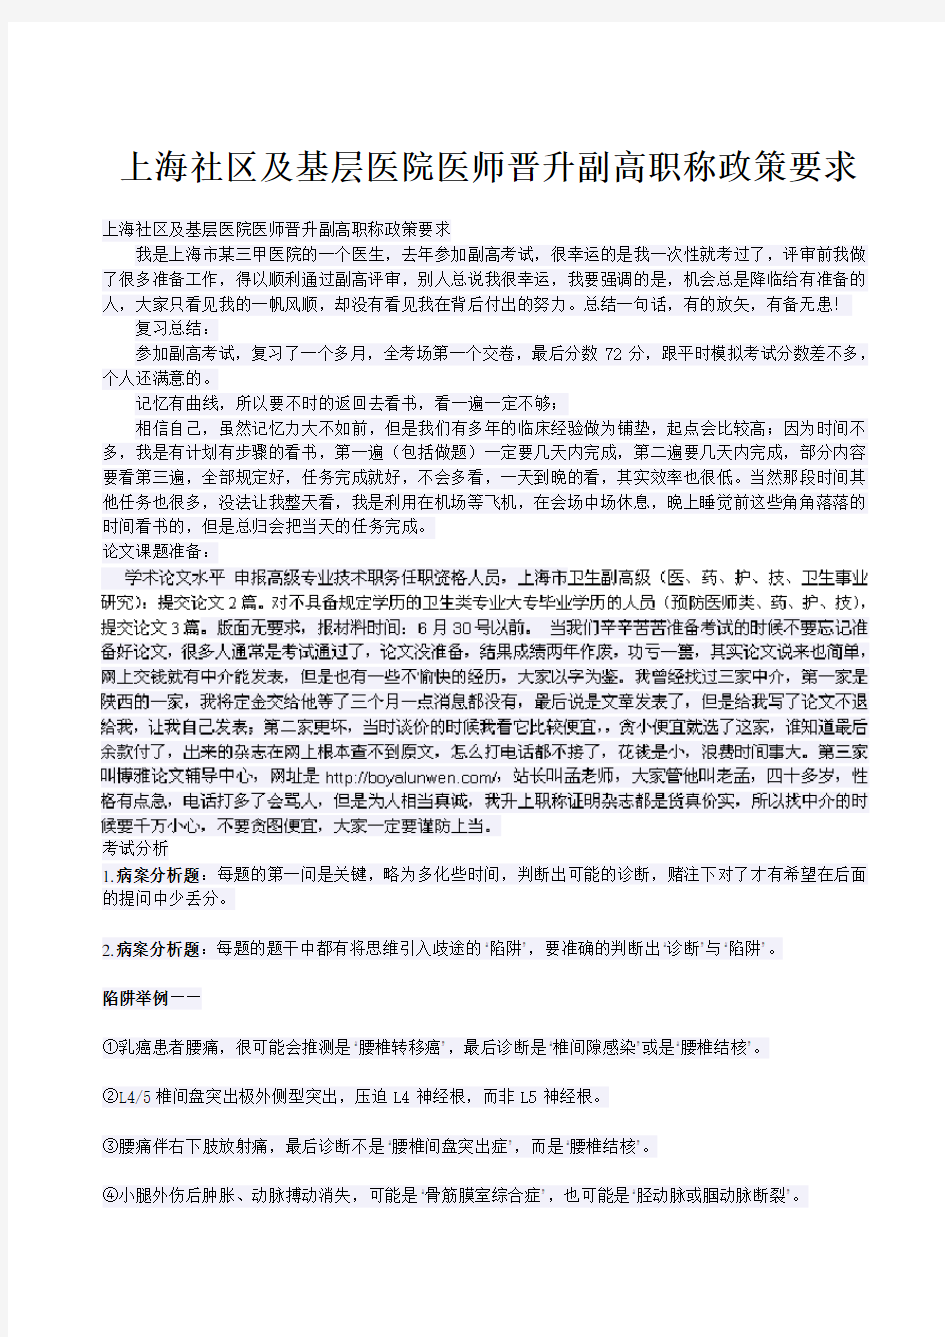 上海社区及基层医院医师晋升副高职称政策要求